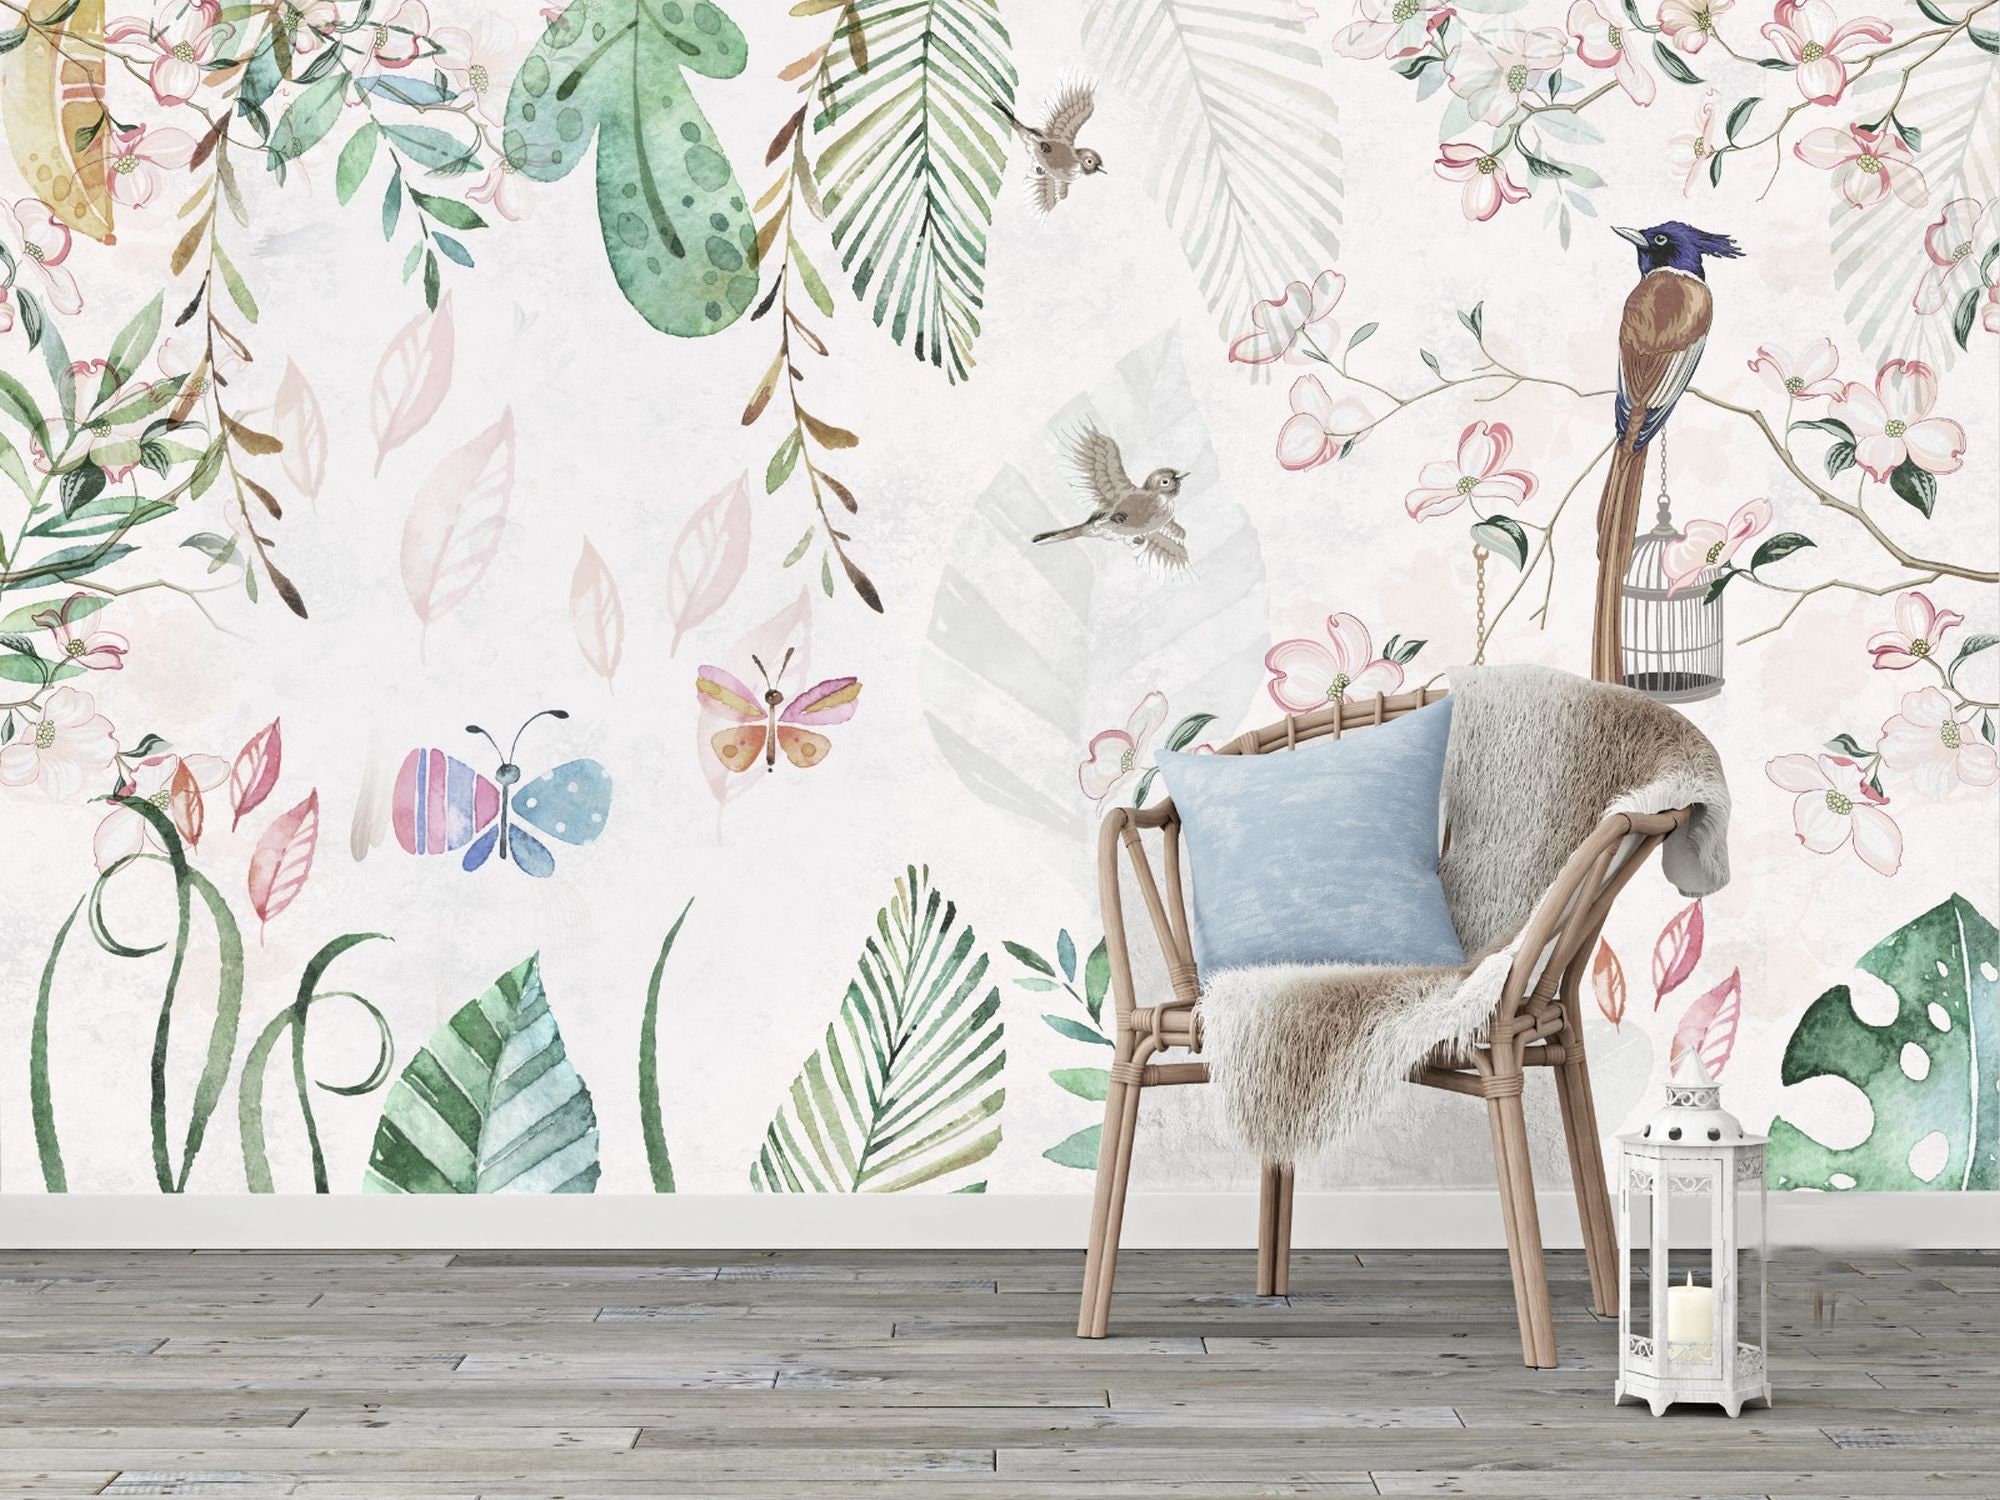  LUOWAN Mural de pared para habitación infantil, diseño de hojas  verdes y mariposas frescas, papel pintado autoadhesivo extraíble,  decoración de pared para dormitorio, sala de estar : Bebés